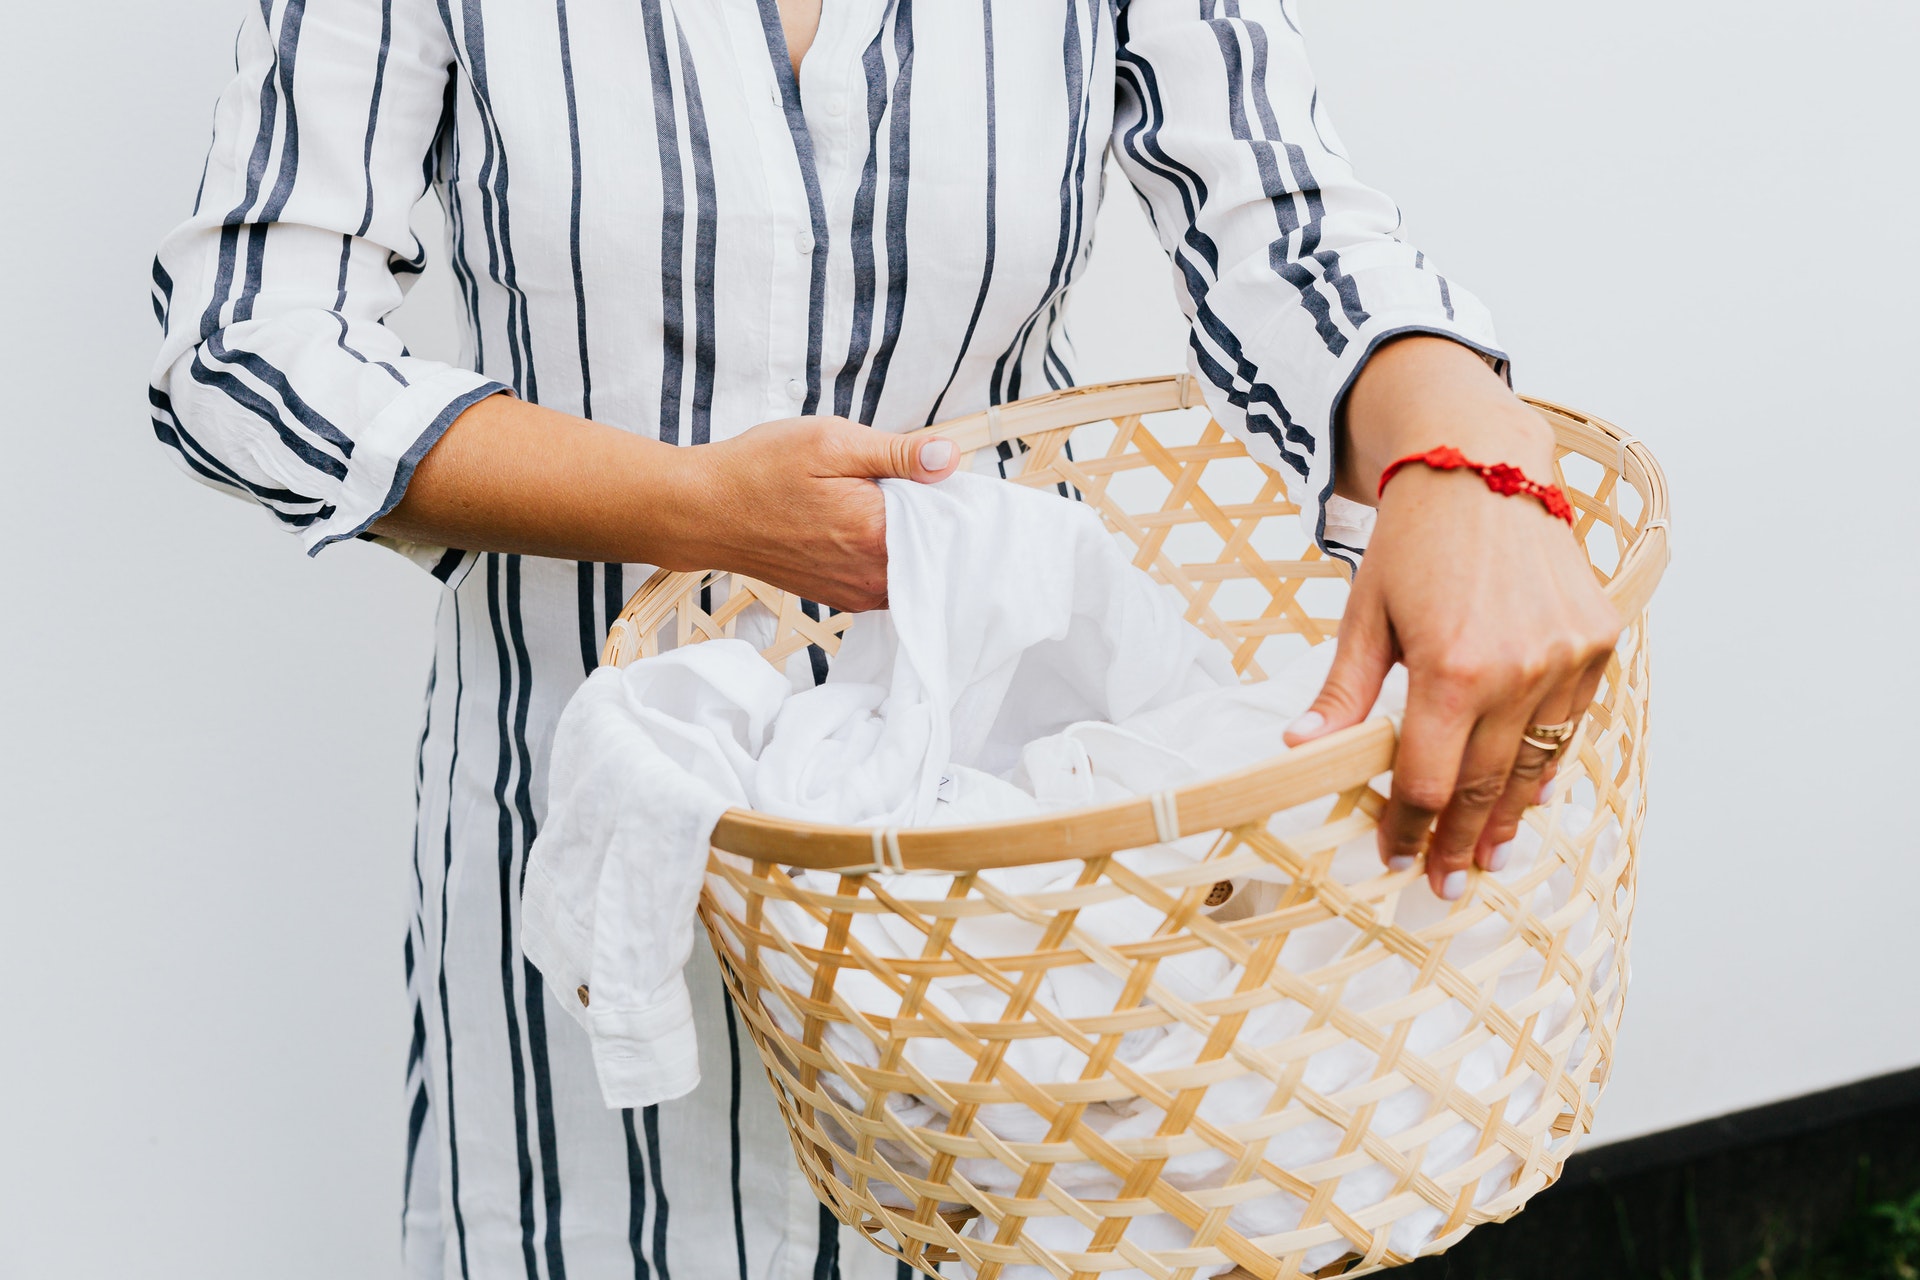 Mulher segurando um cesto de roupa com peças brancas dentro. Imagem do texto sobre franquias interessantes e baratas.